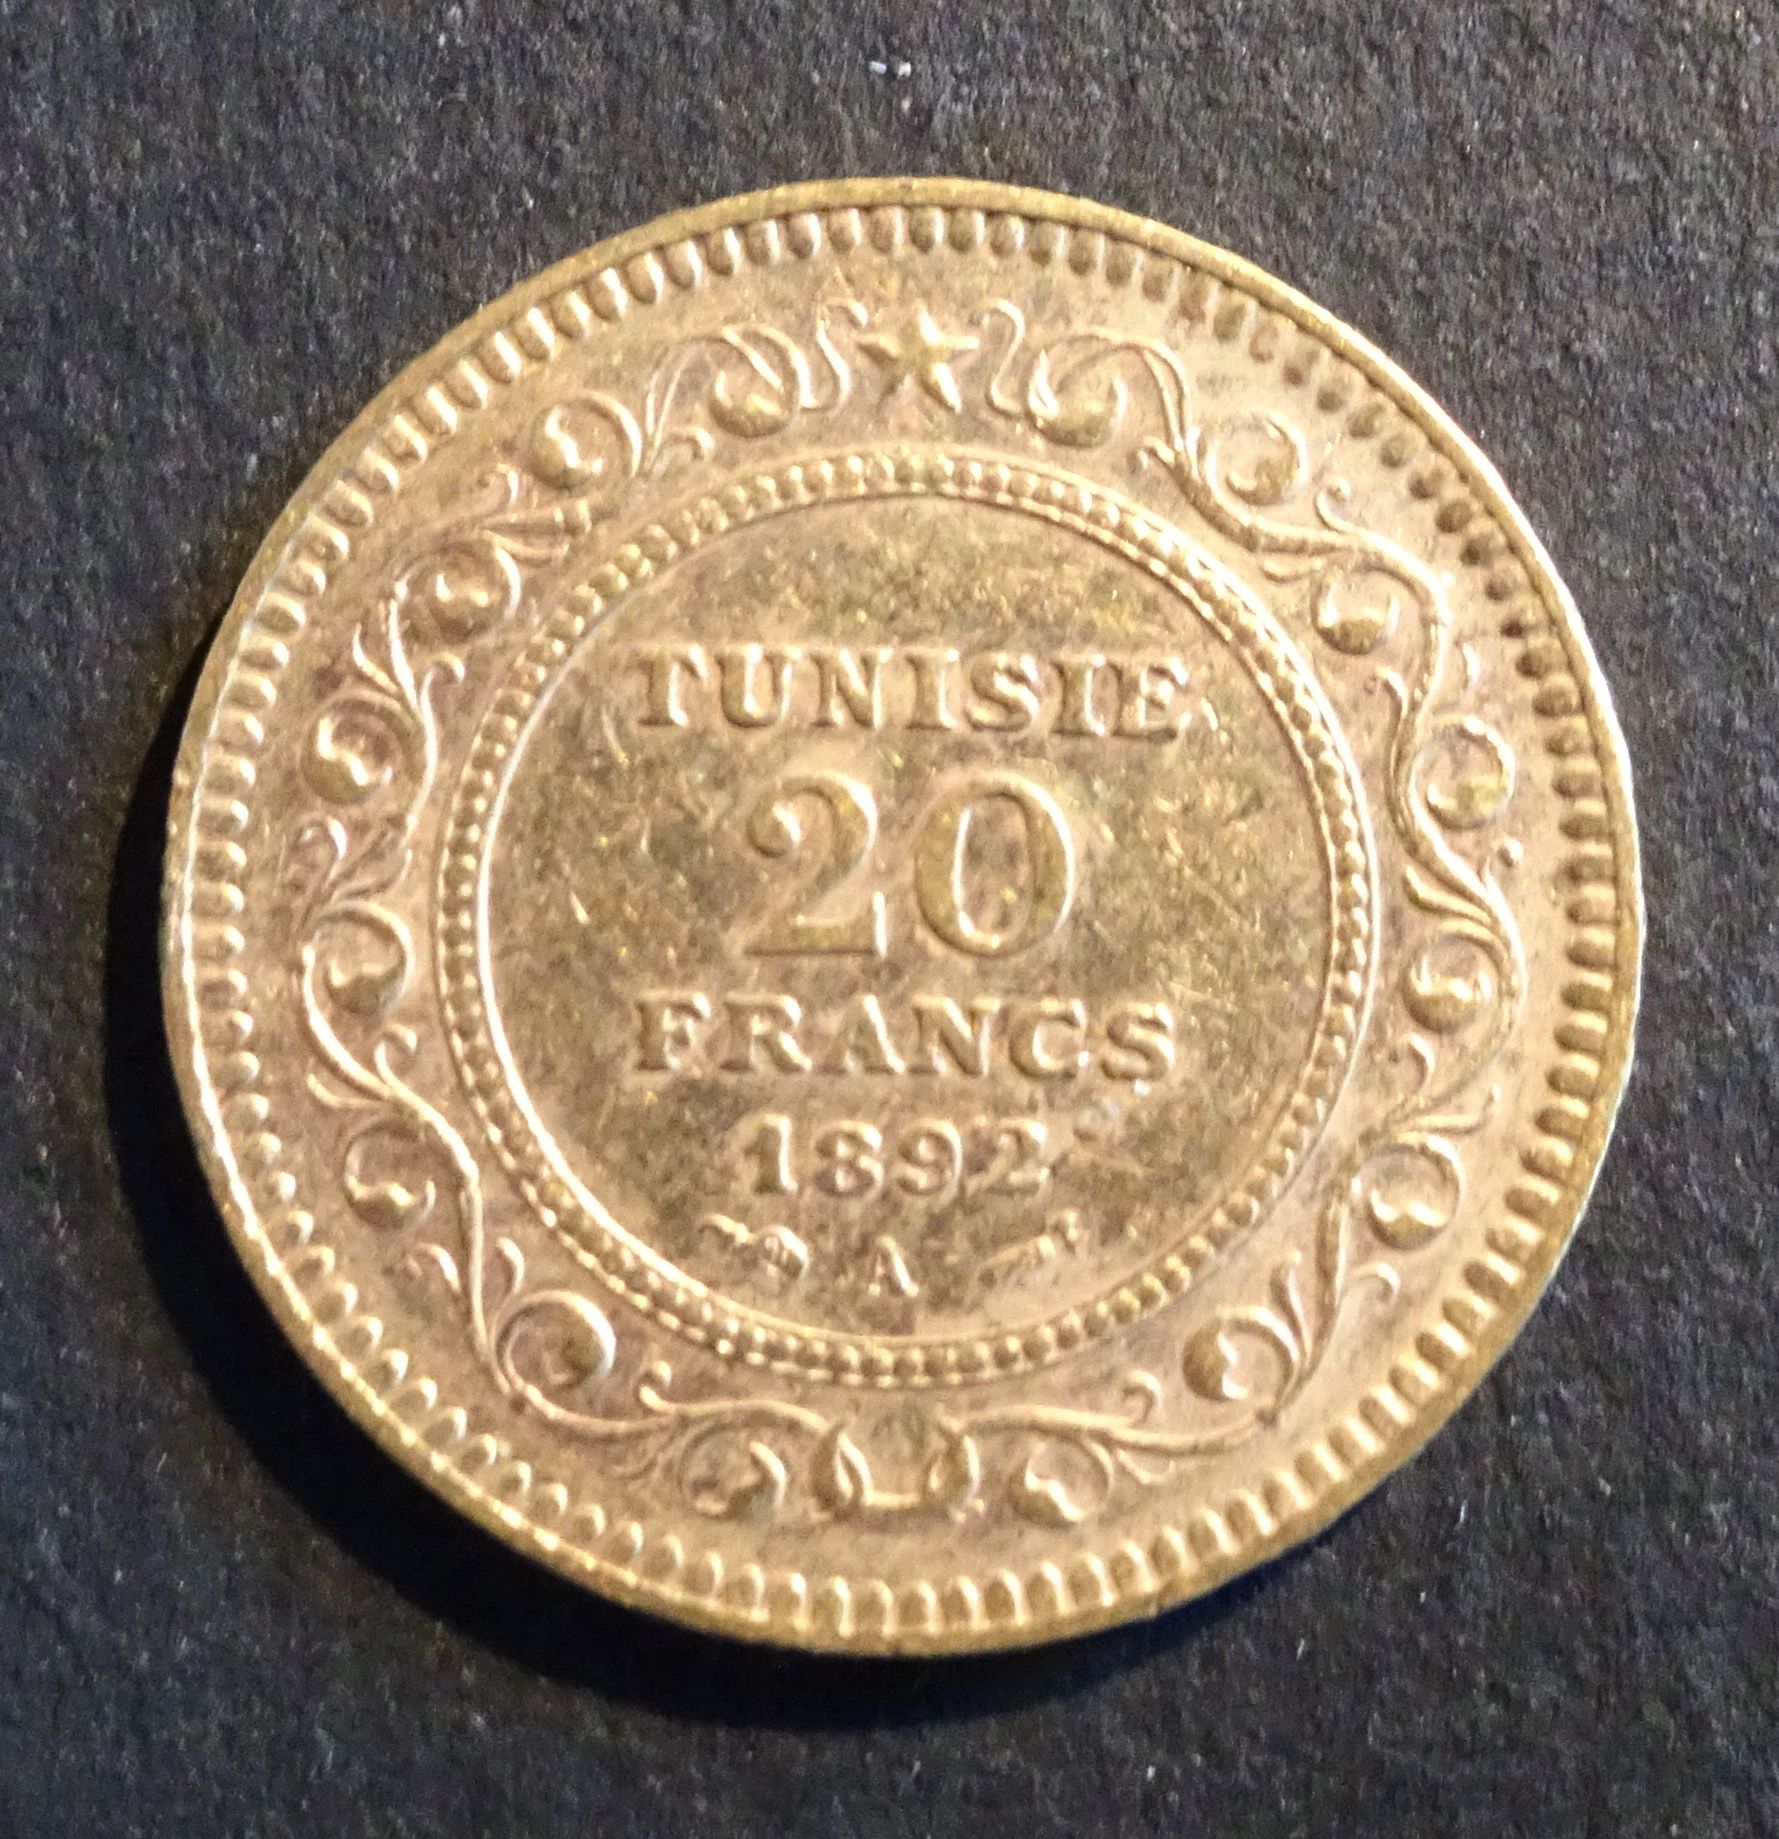 Null OR-Münze. Münze 20 Francs OR Tunesien, 1892.
Gewicht: 6,46 g.